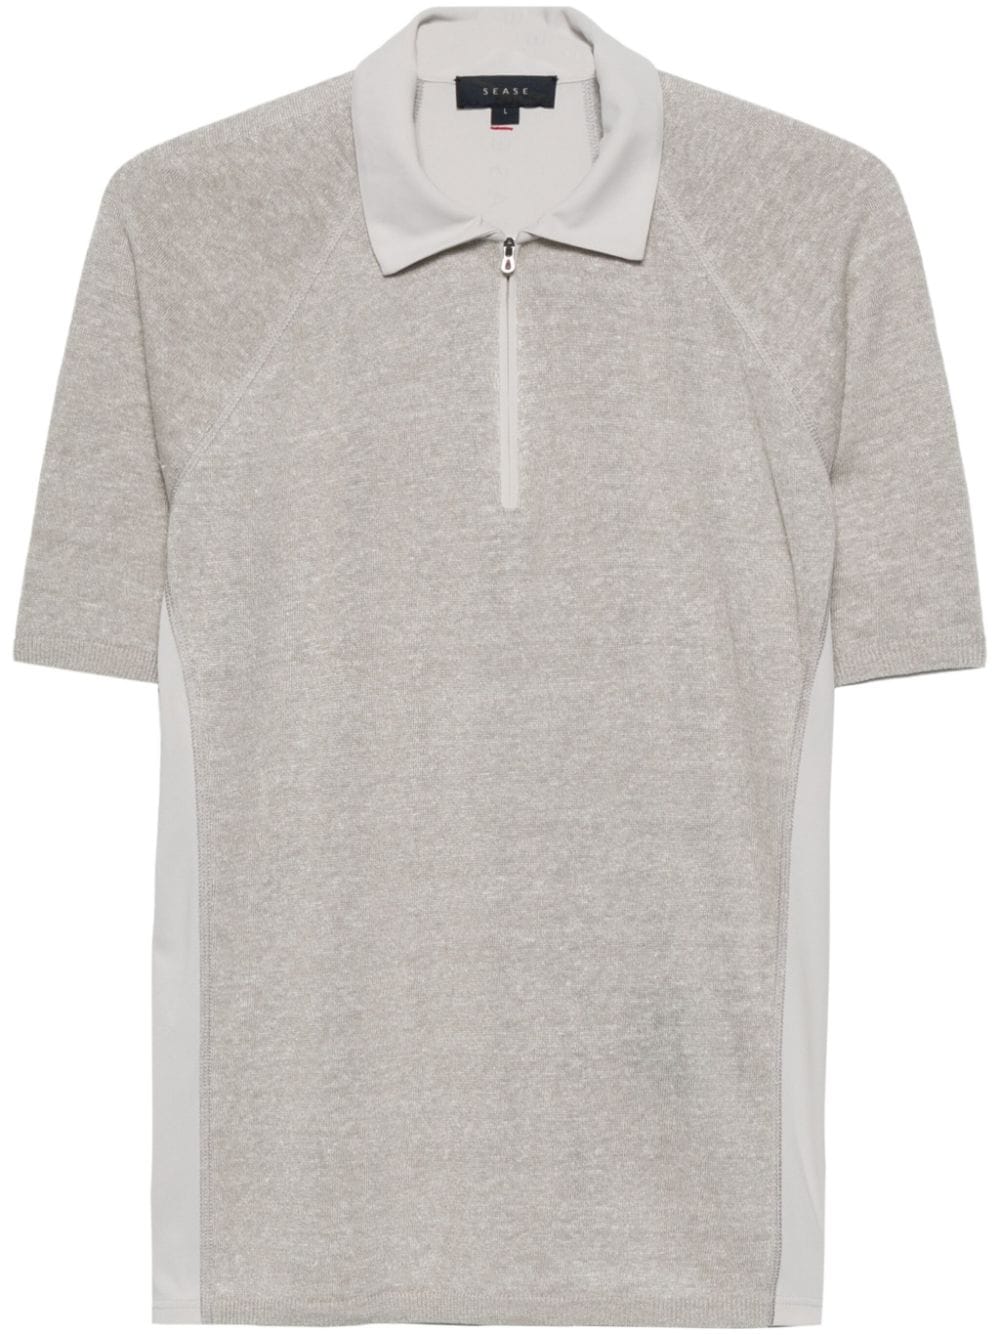 Sease Hybrid Polo Shirt In Gray